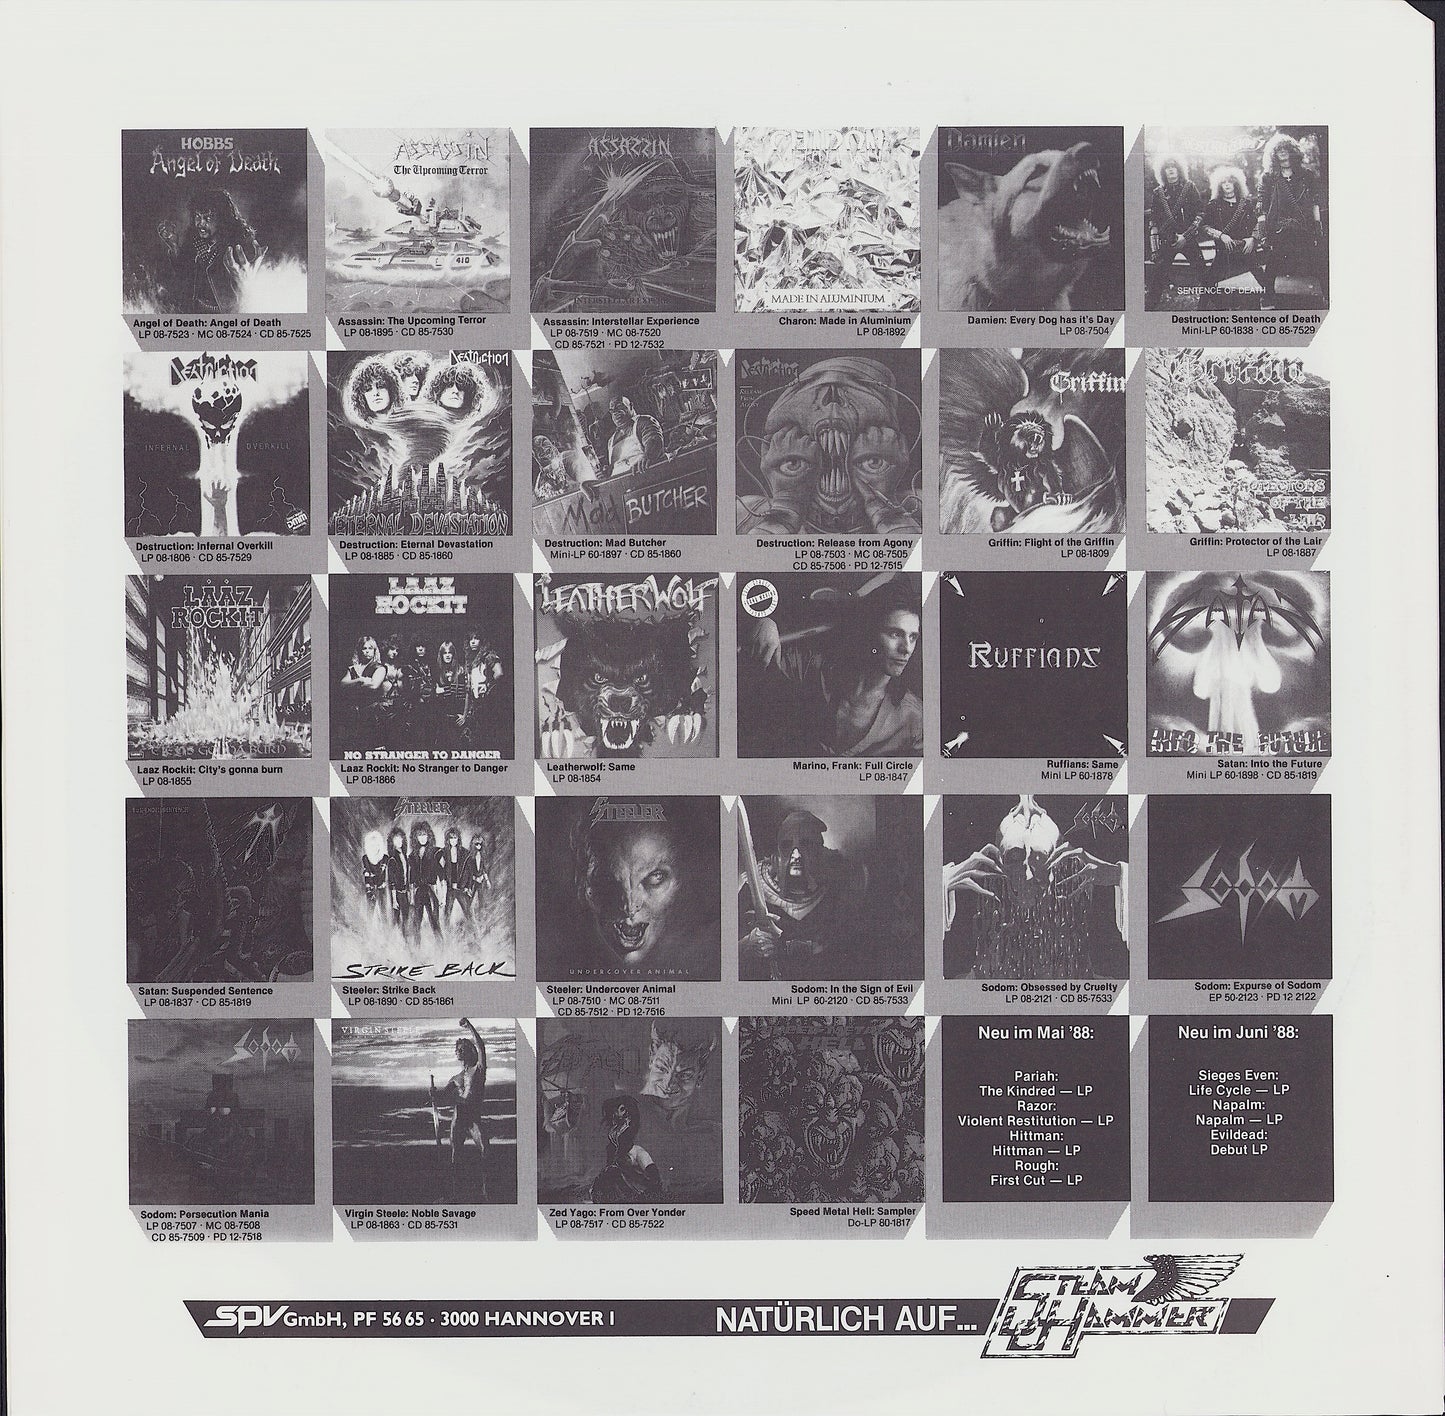 Hobbs Angel Of Death ‎- Hobbs' Angel Of Death Vinyl LP